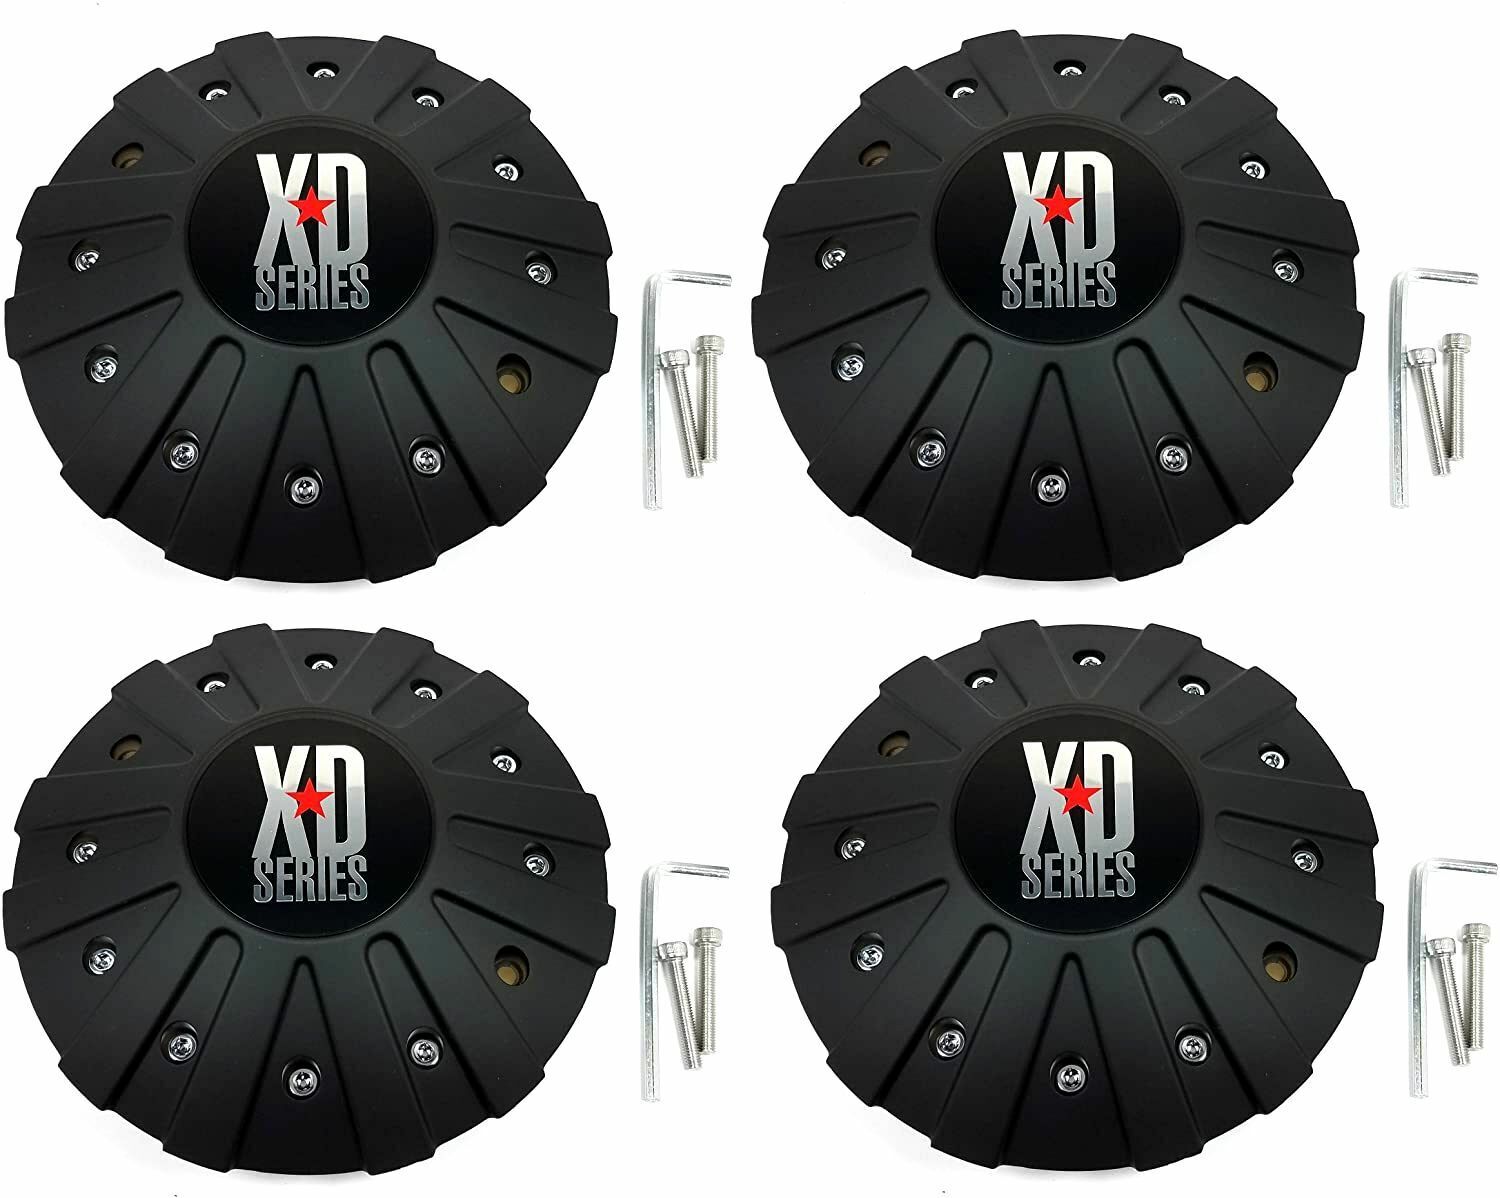 4 NEW KMC XD Series Wheel Center Caps Matte Black FITS ALL XD778 Monster Wheels 